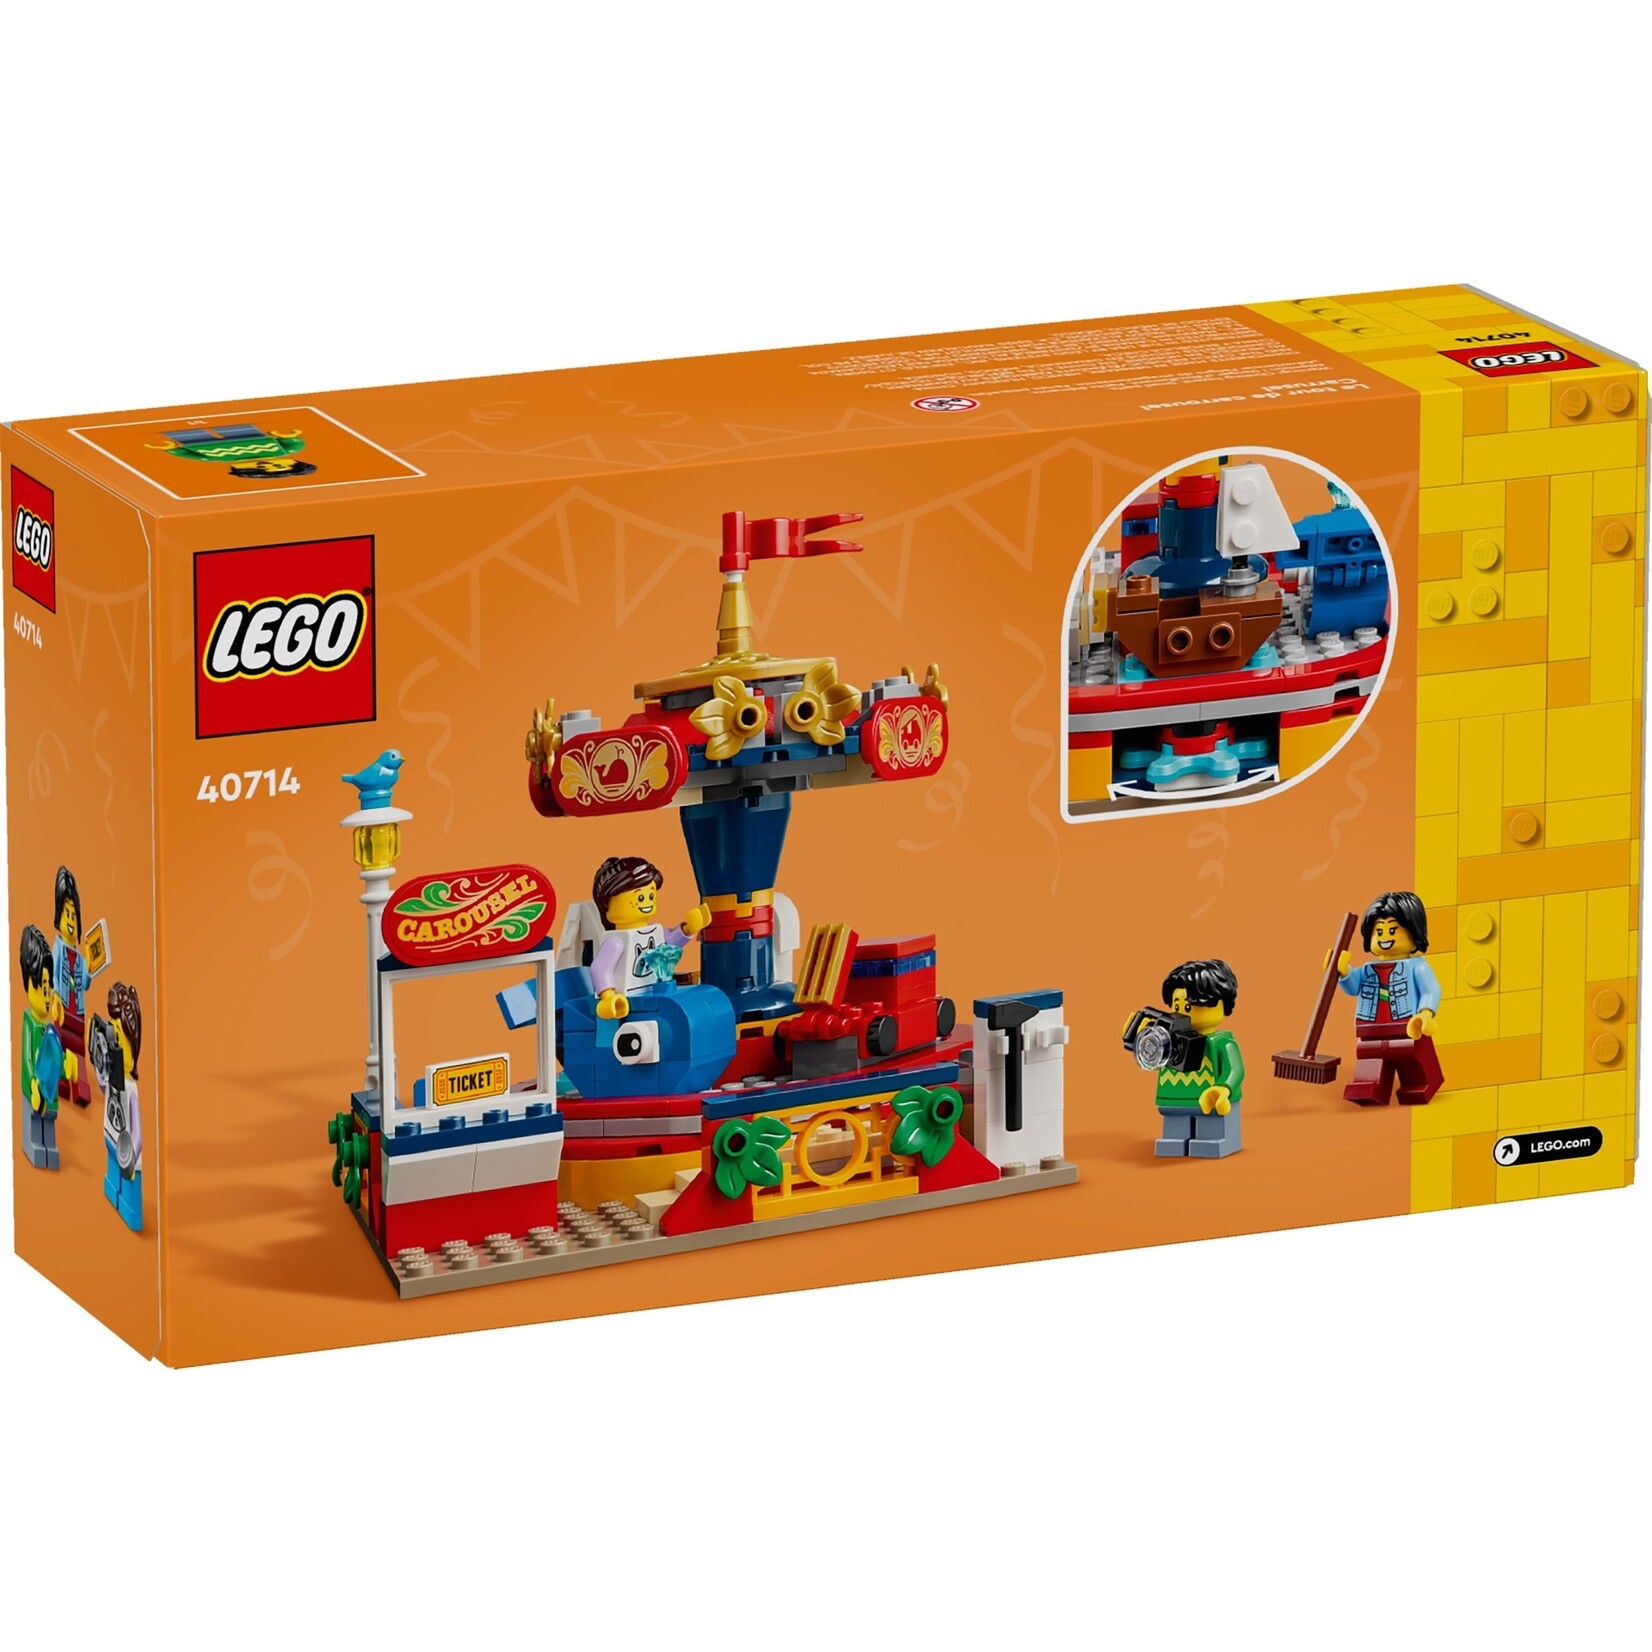 LEGO Draaimolen - 40714